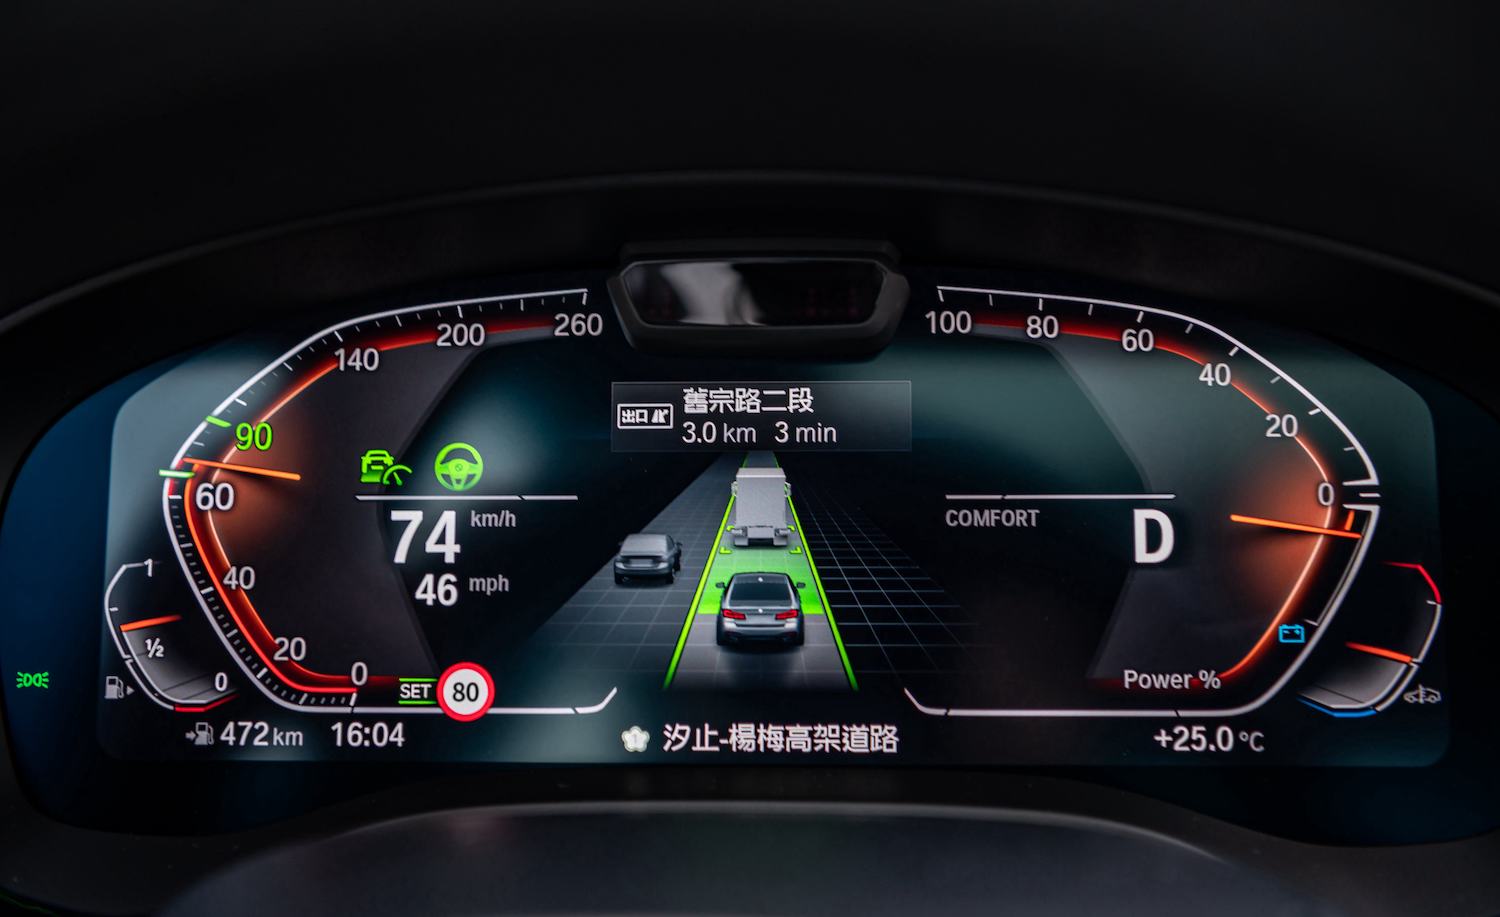 全車系標準配備 BMW Personal CoPilot 智慧駕駛輔助科技升級自動倒車輔助系統、道路虛擬實境顯示功能與速限輔助功能。